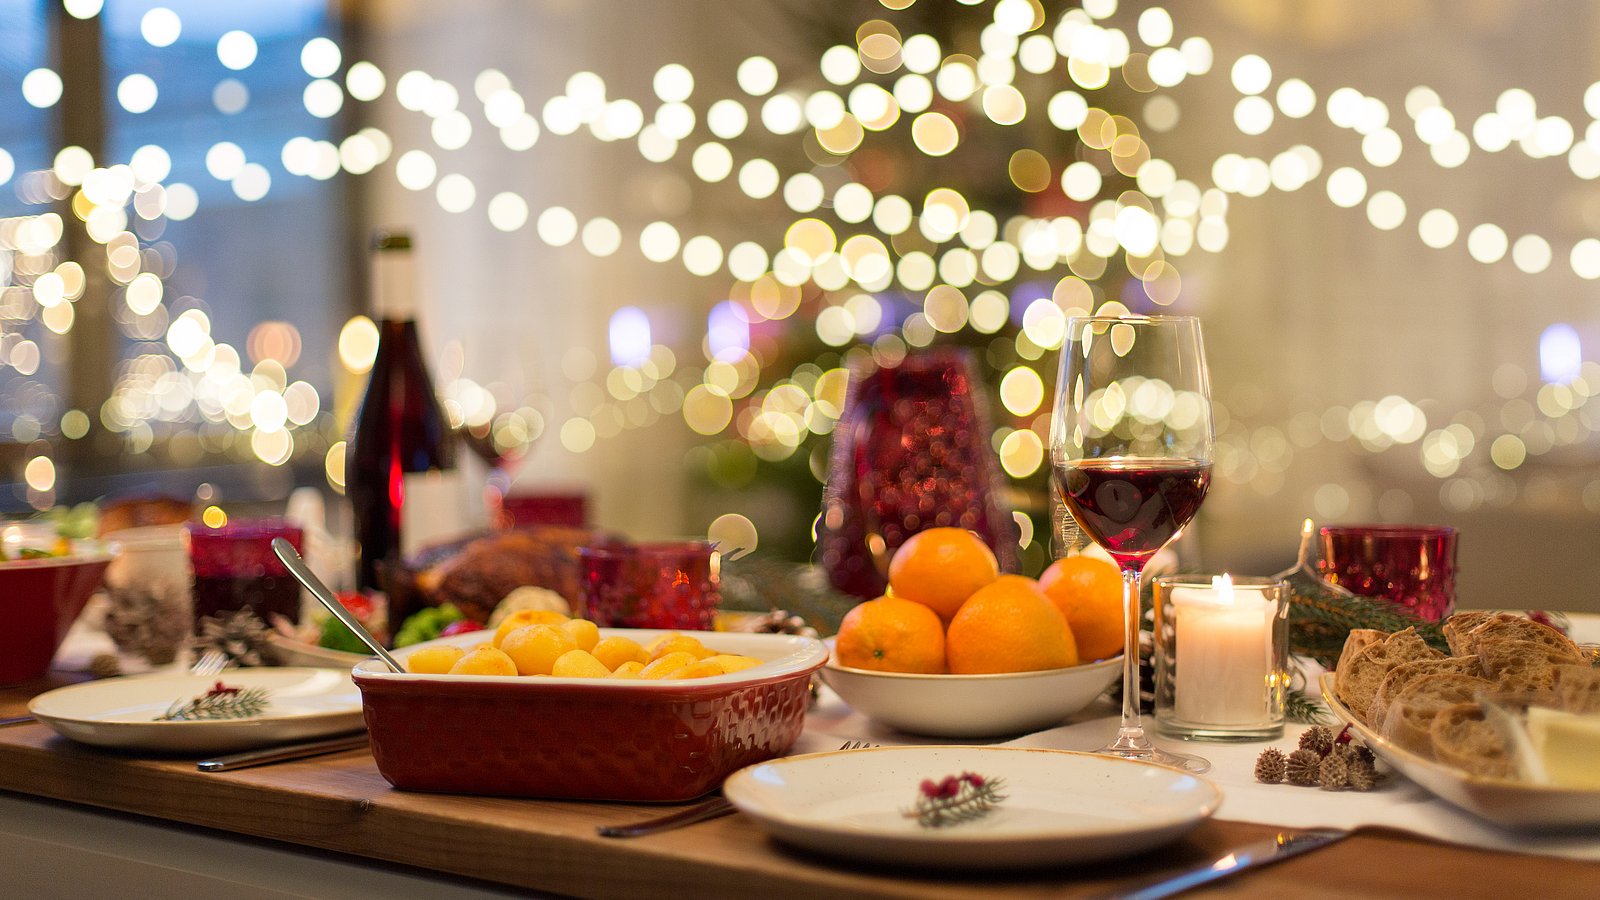 Festlich gedeckte Weihnachtstafel mit Orangen, Kartoffeln und Brot. Im Hintergrund hängen Lichterketten.